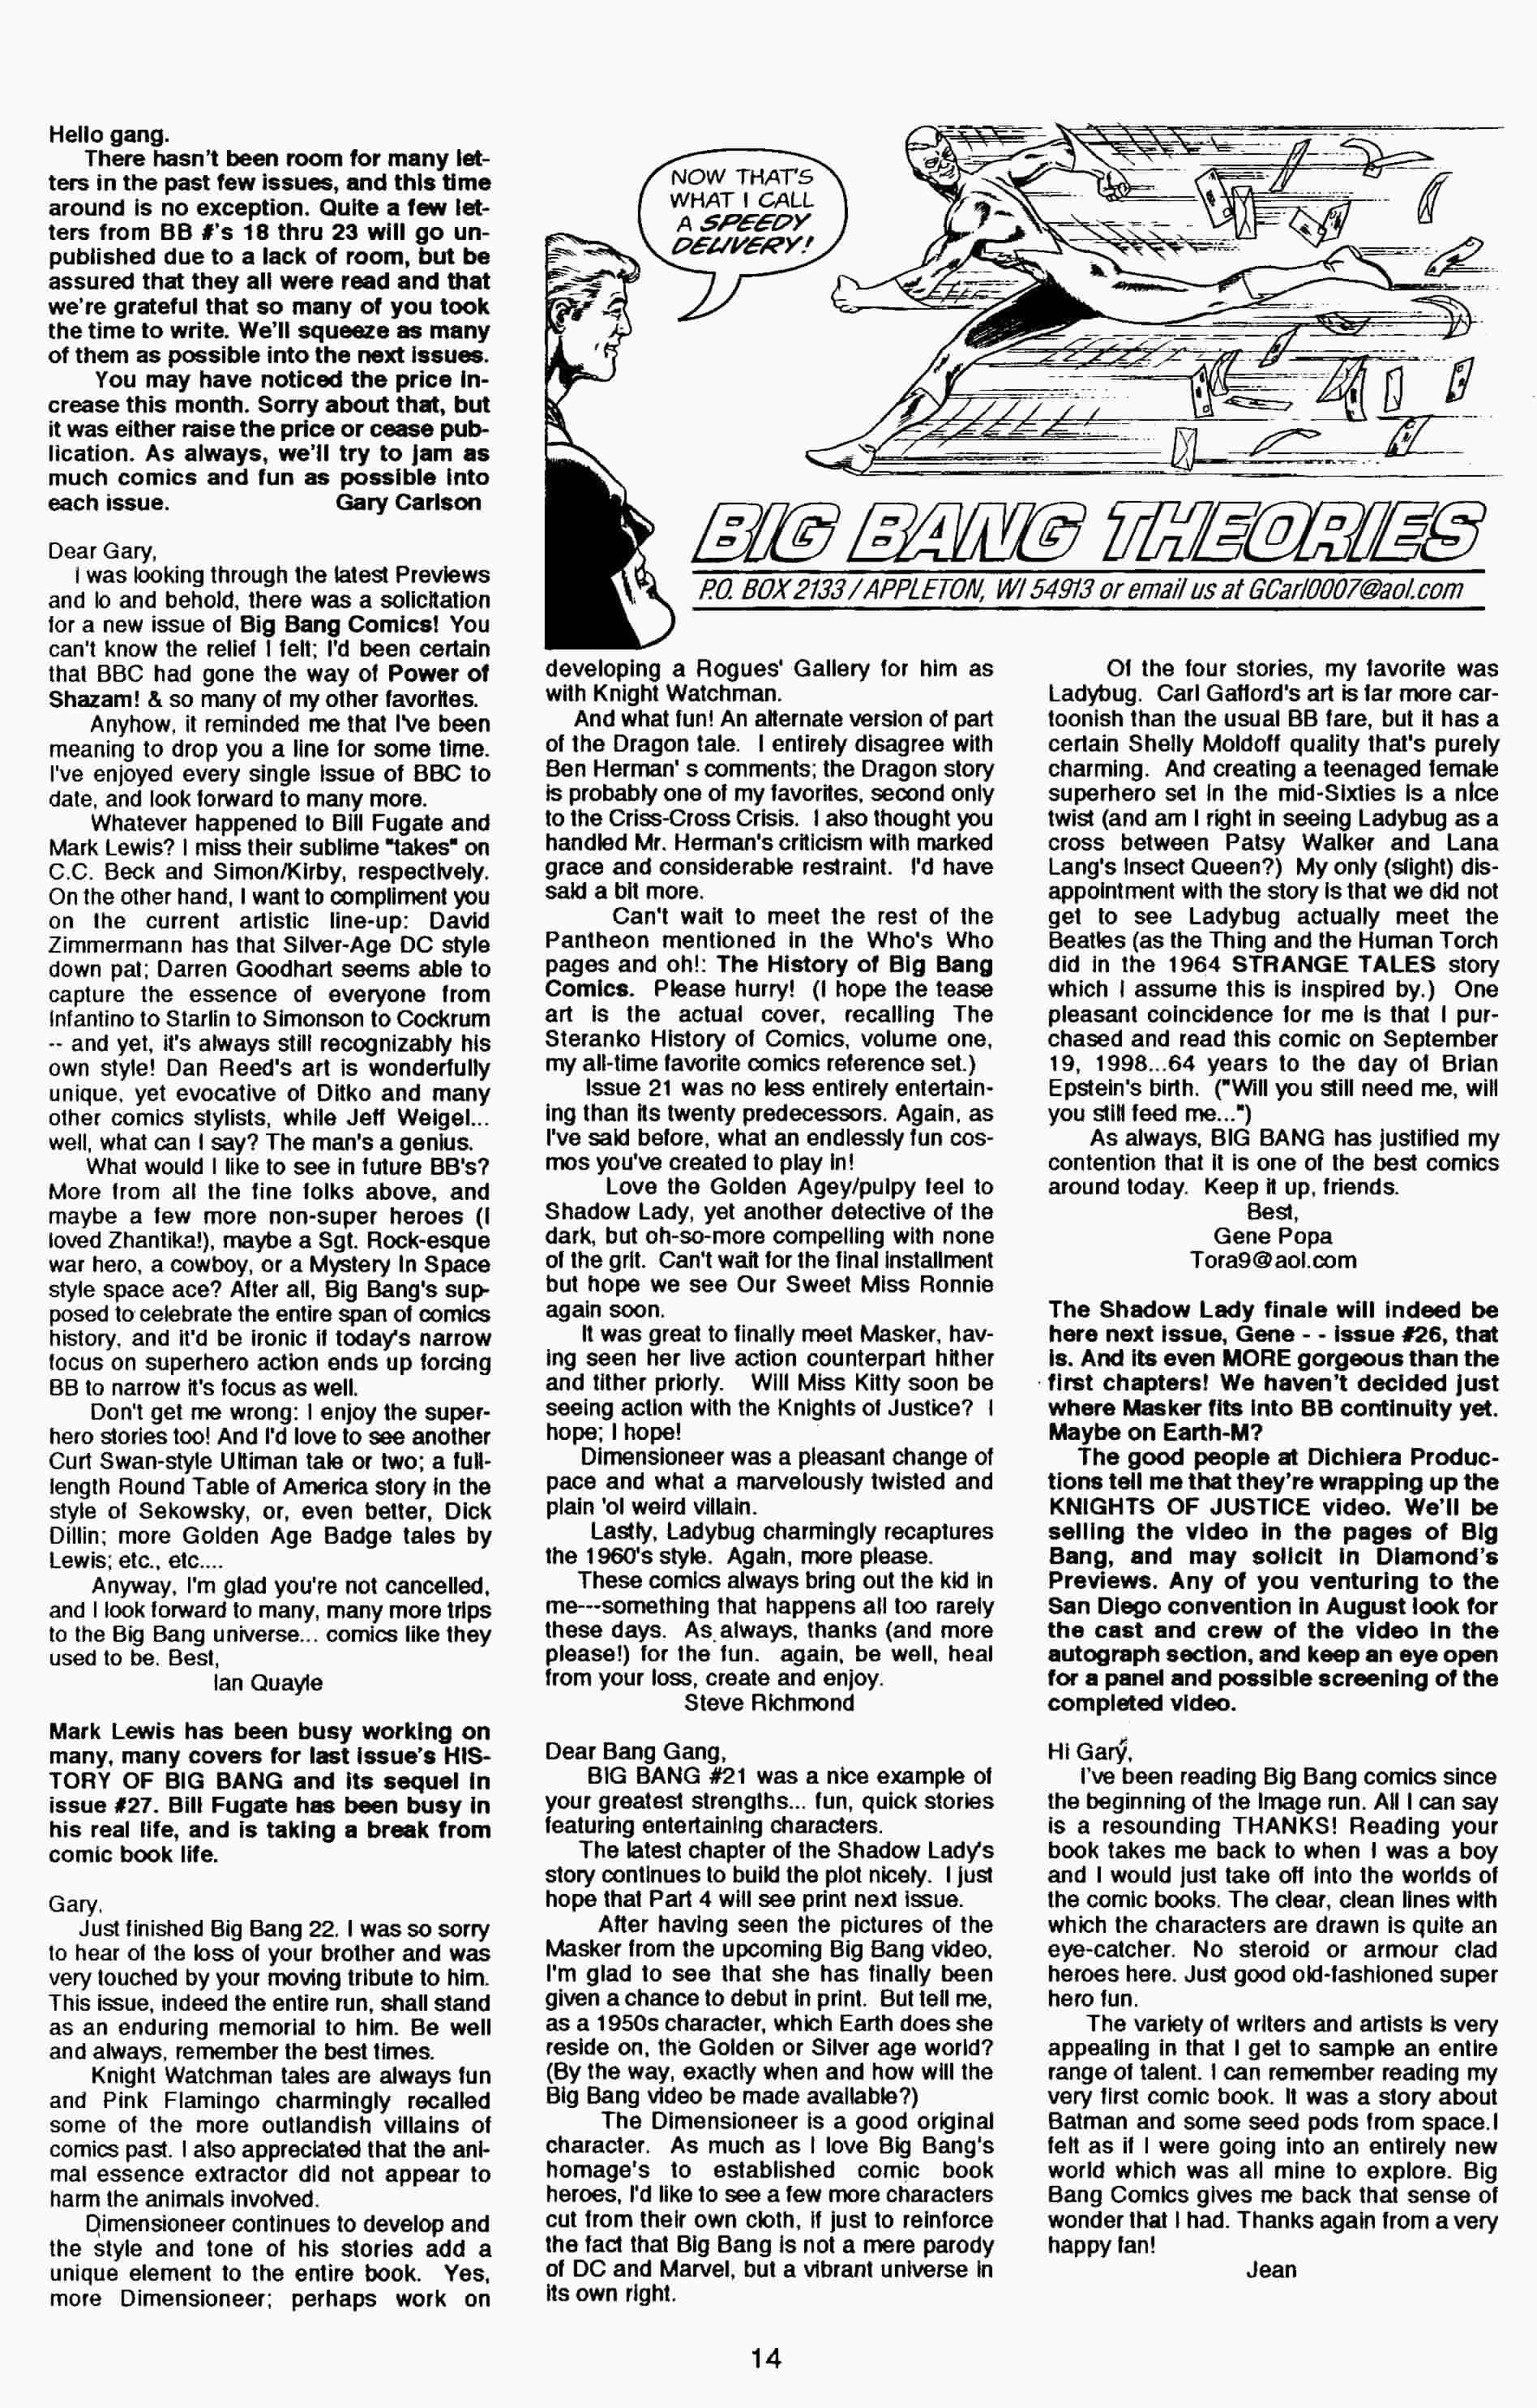 Read online Big Bang Comics comic -  Issue #25 - 16